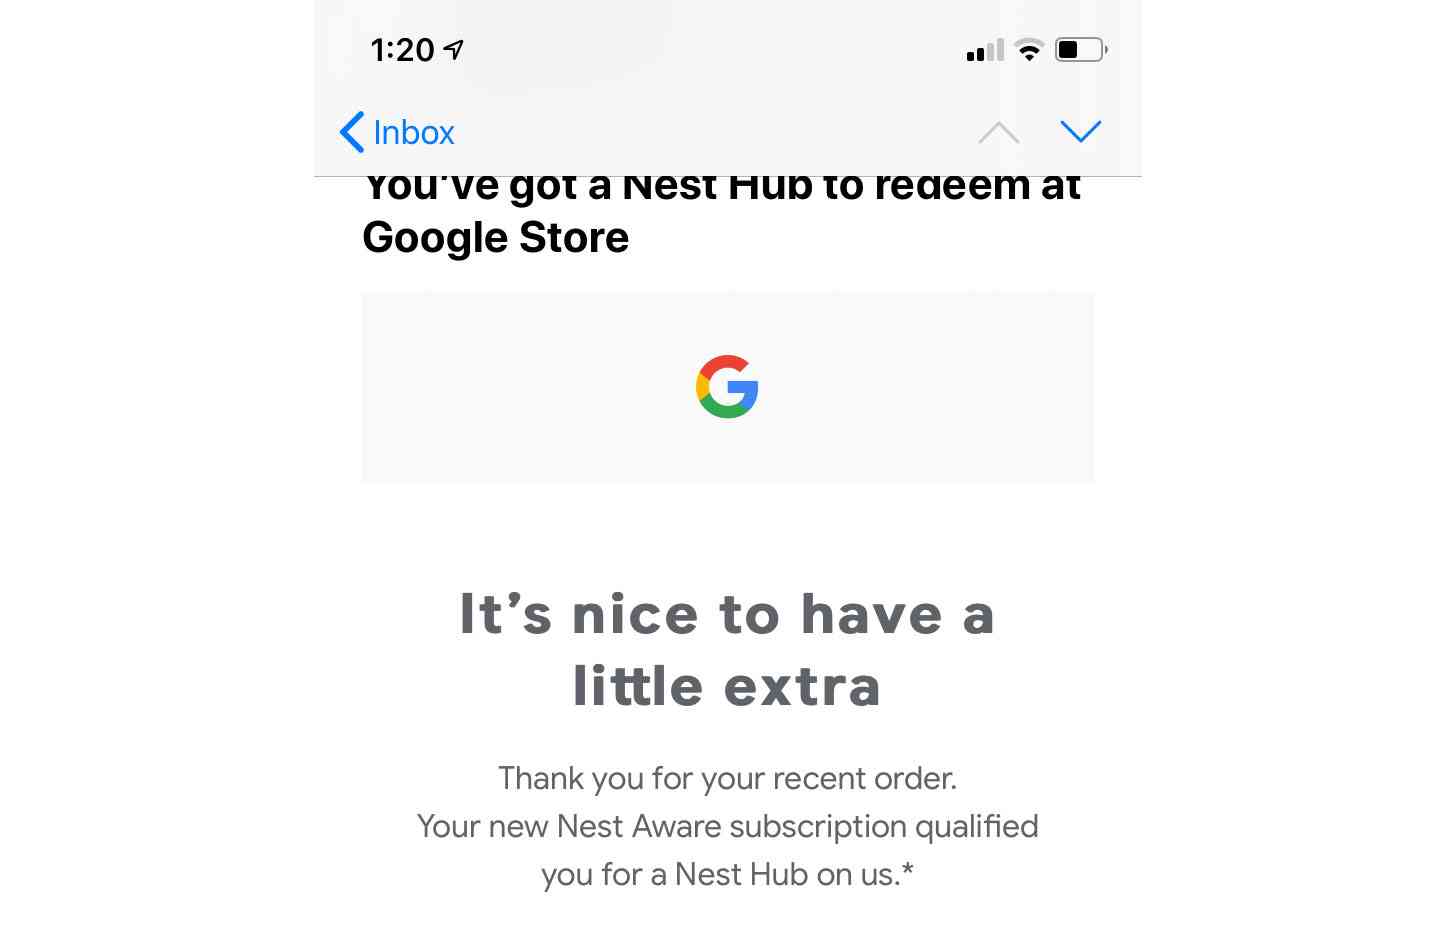 Google free Nest Hub offer